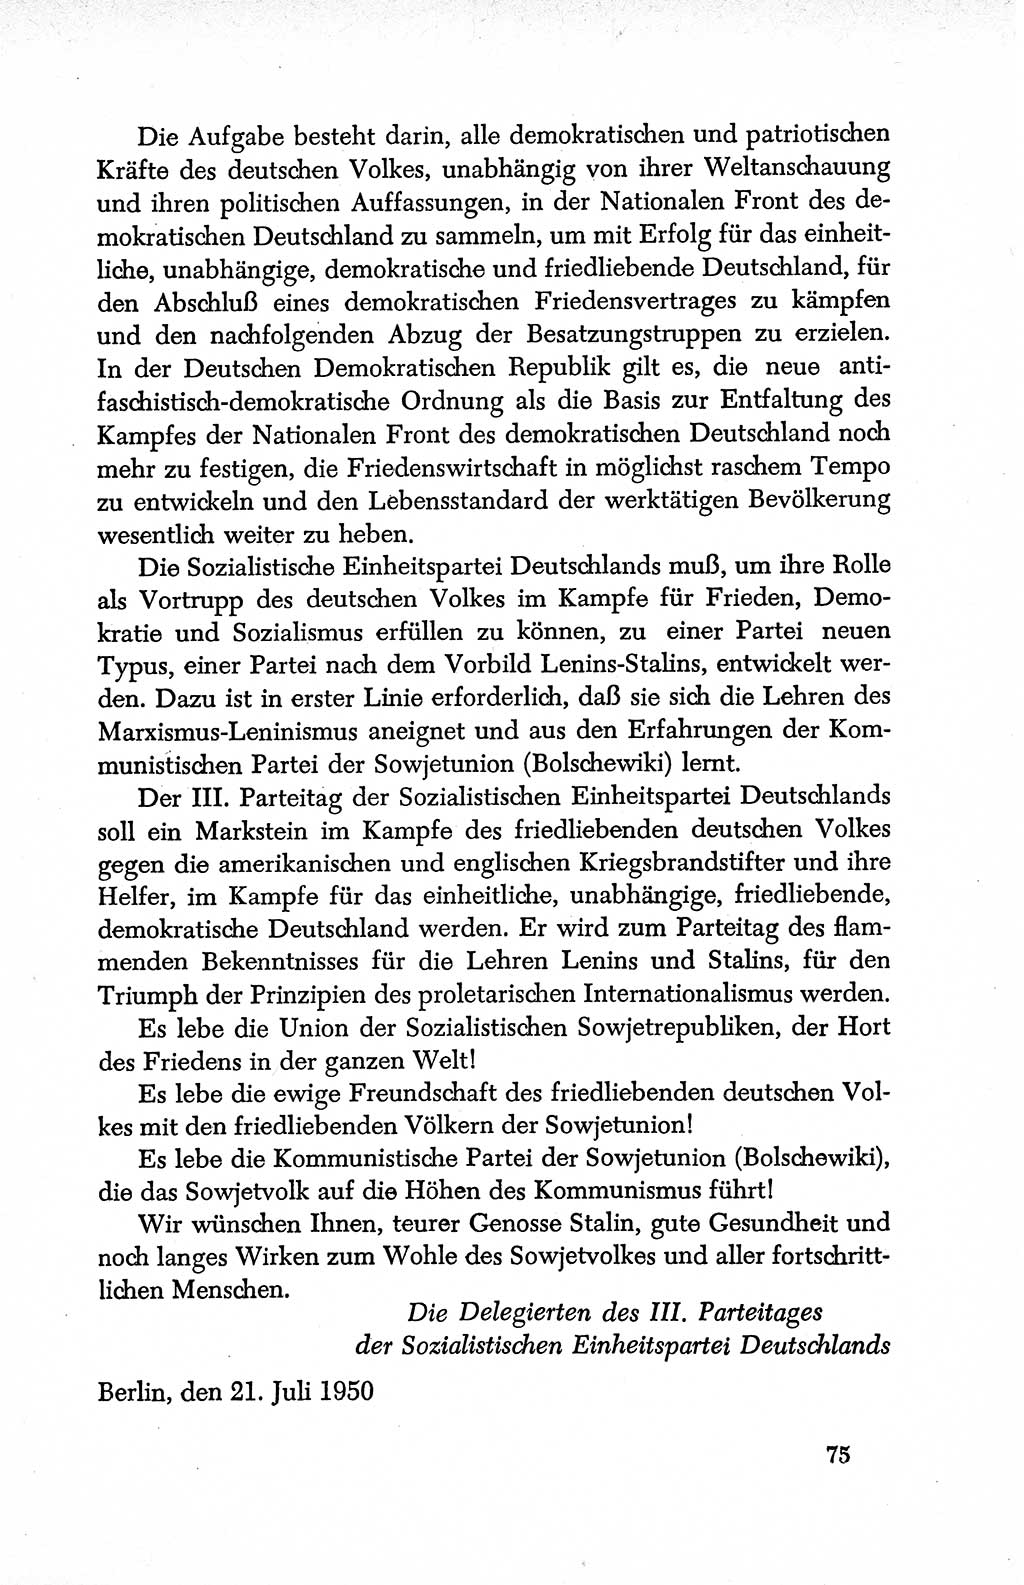 Dokumente der Sozialistischen Einheitspartei Deutschlands (SED) [Deutsche Demokratische Republik (DDR)] 1950-1952, Seite 75 (Dok. SED DDR 1950-1952, S. 75)